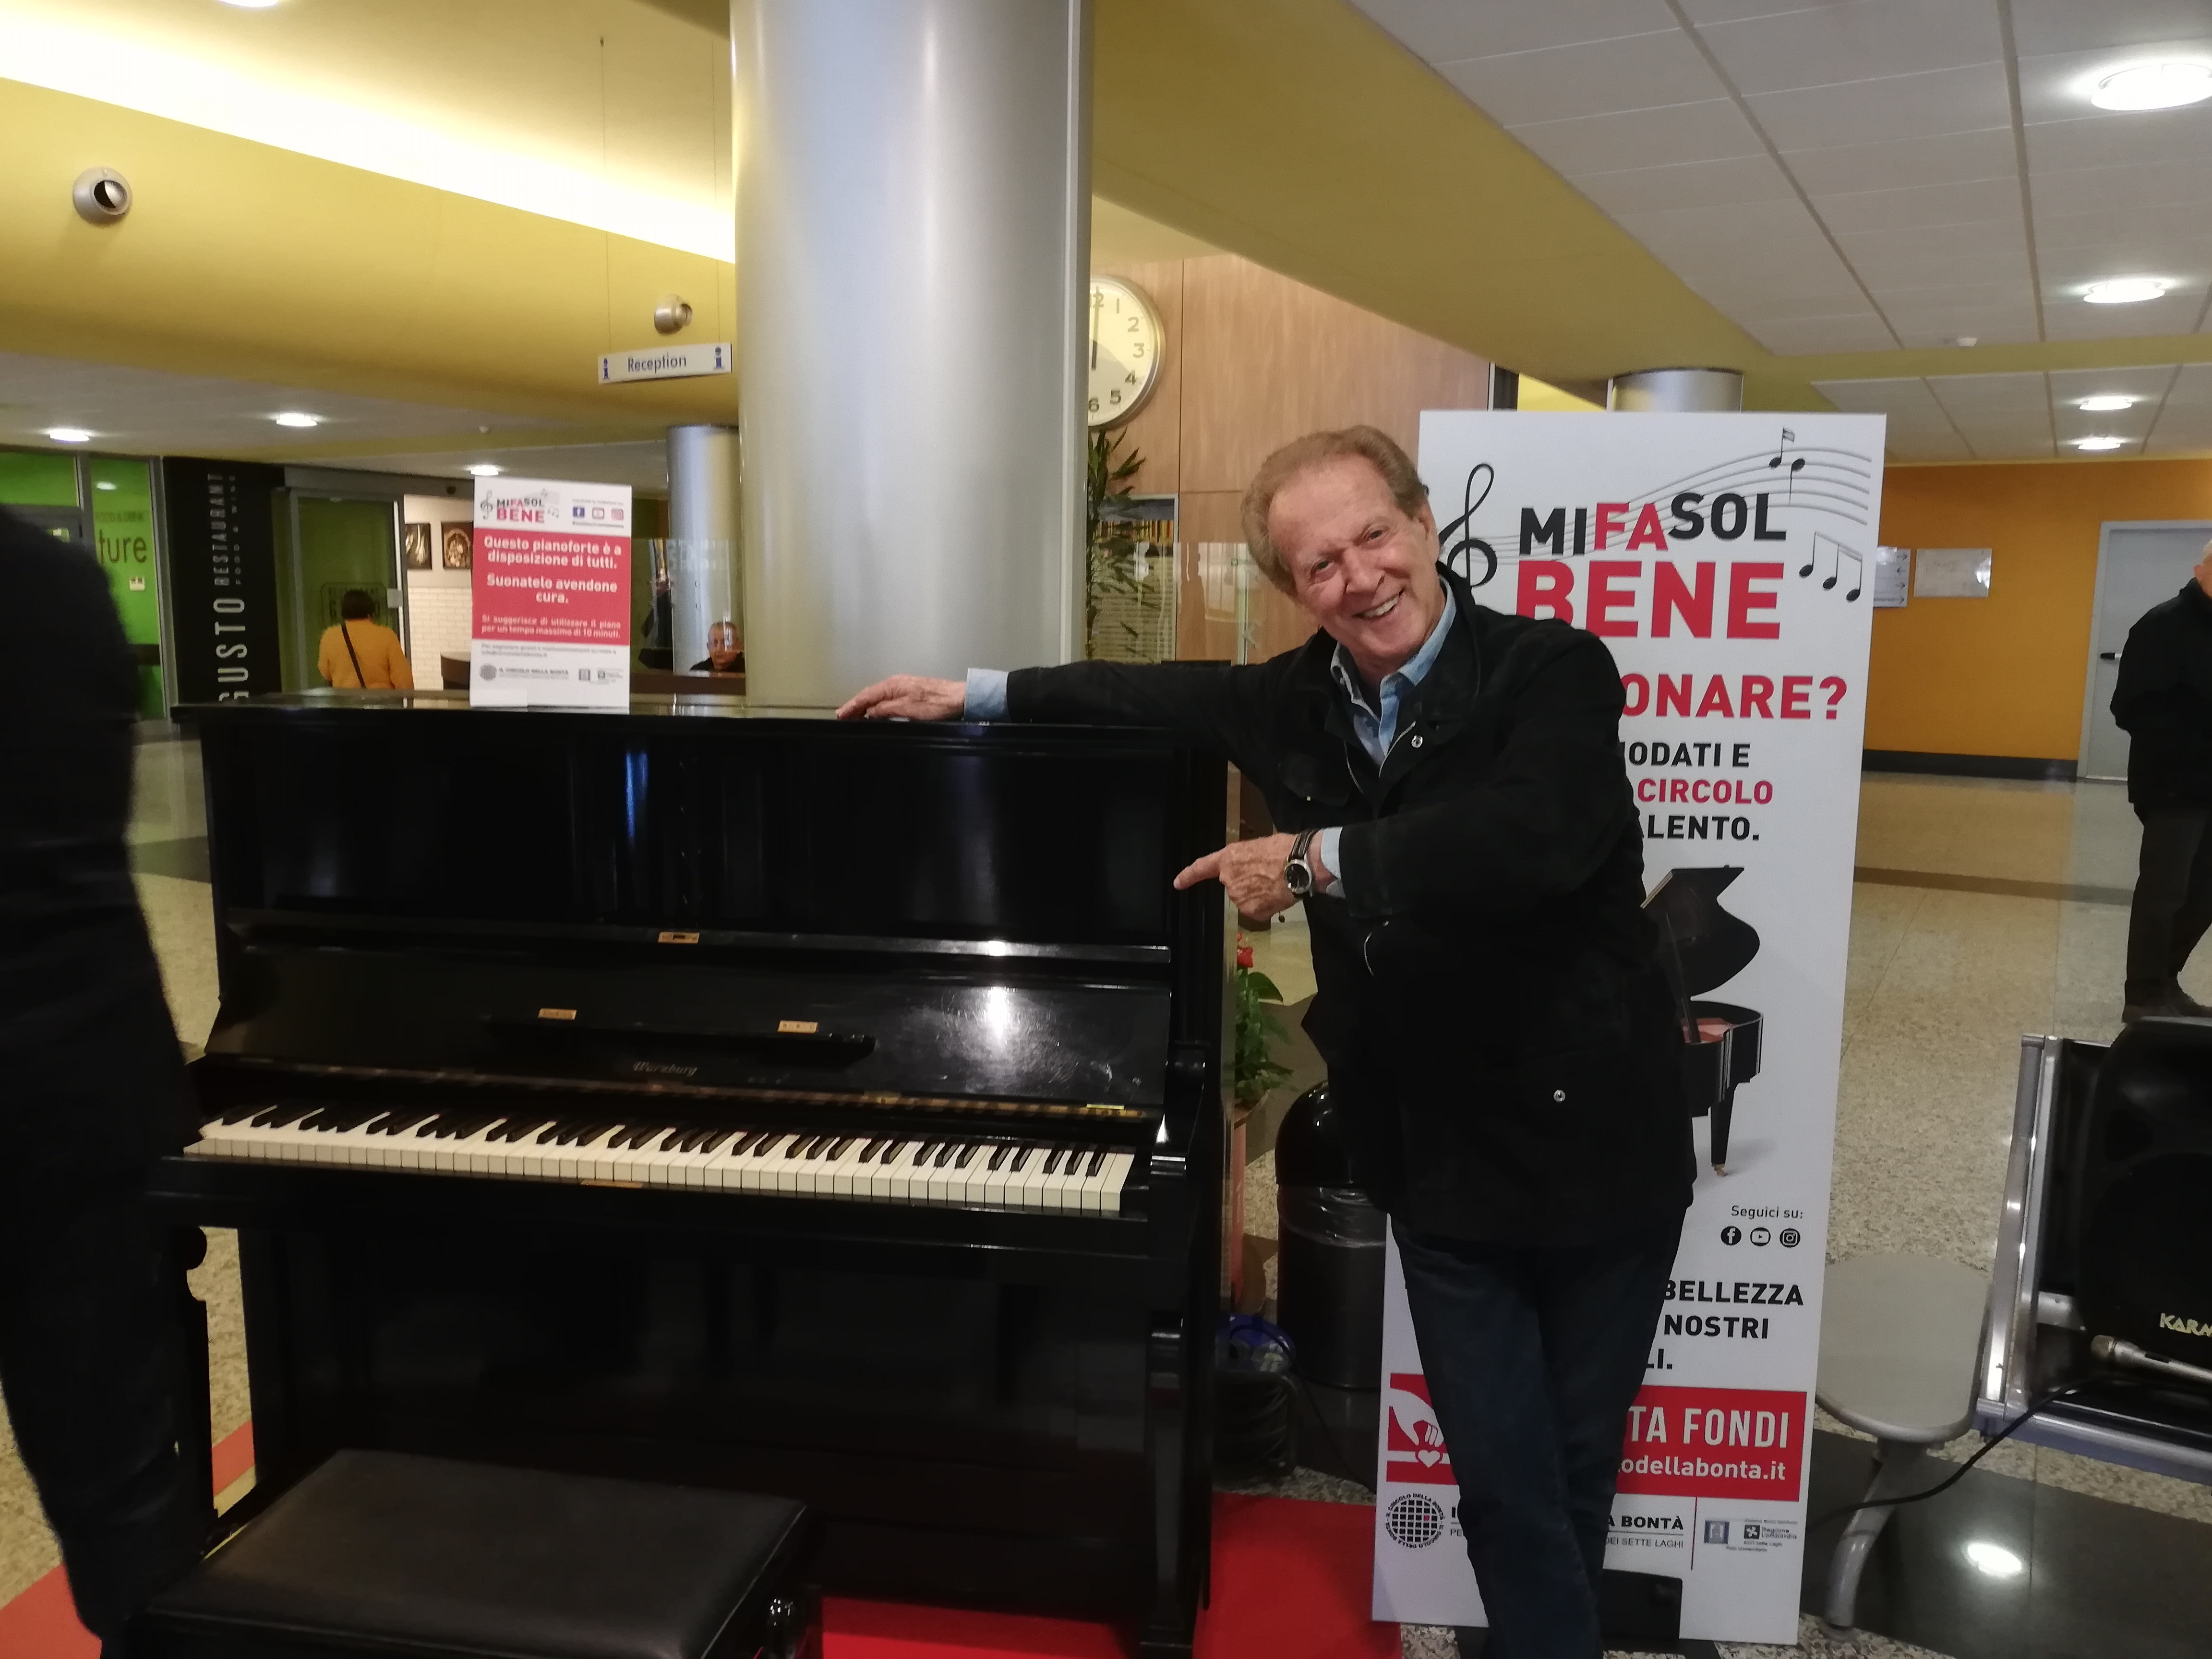 MI-FA-SOL BENE: Le note di un pianoforte nella hall dell’ospedale